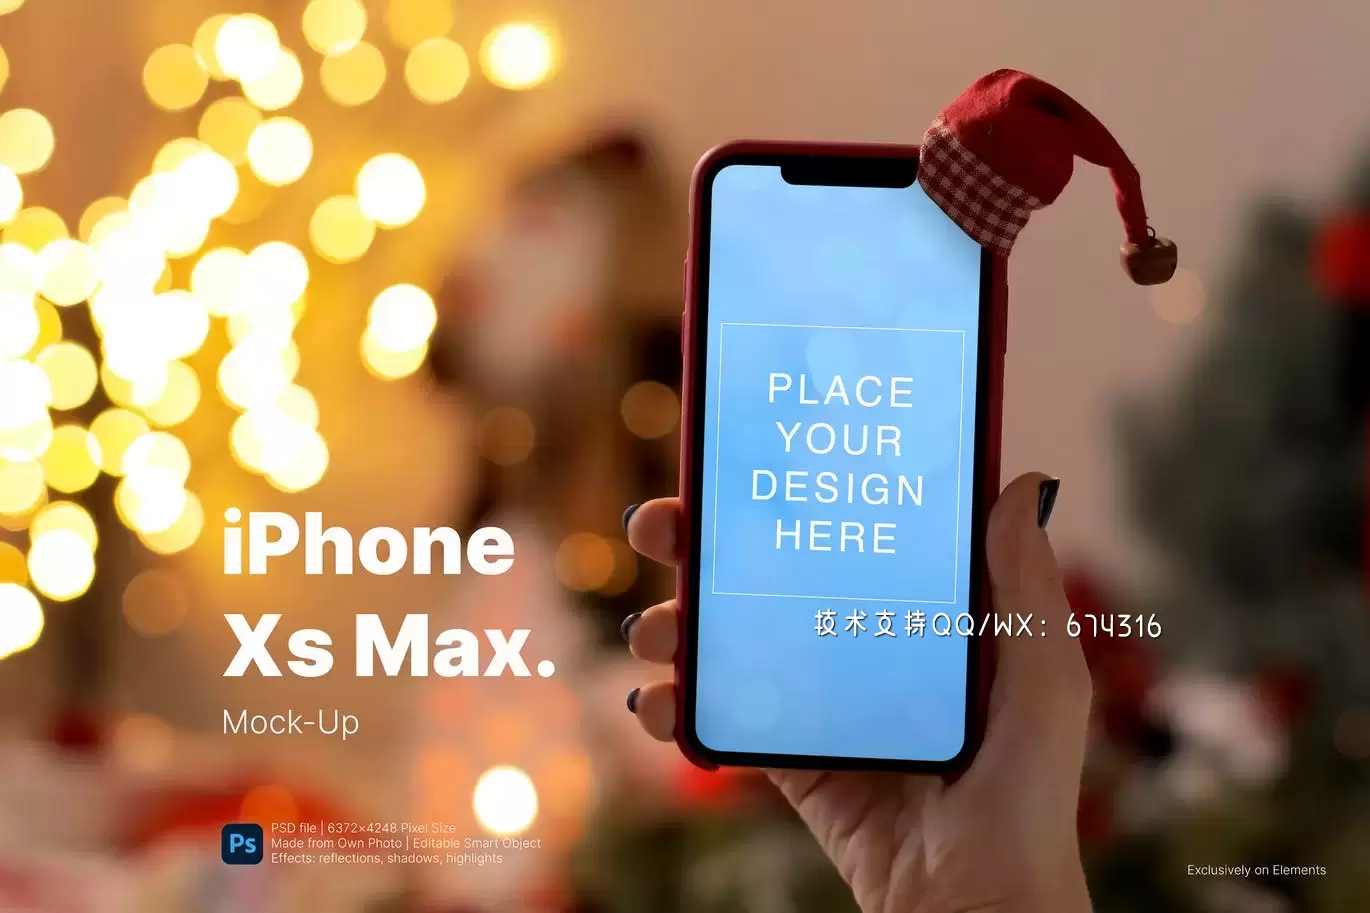 缩略图圣诞节装扮的手持iPhone手机样机下载（PSD）下载